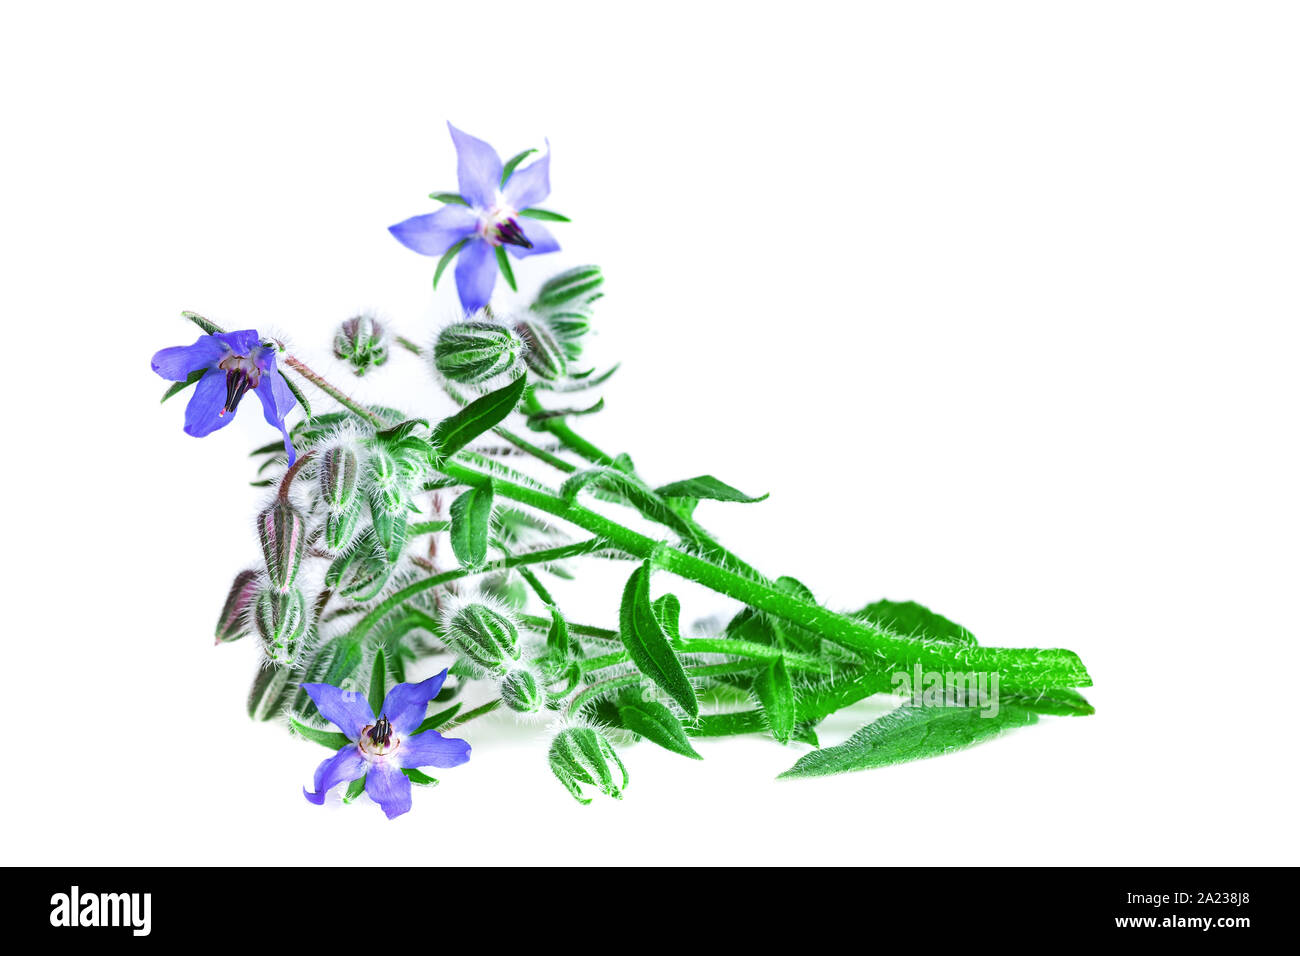 La borraja sobre fondo blanco. La borraja planta verde con flores azules (Borago officinalis). Foto de stock